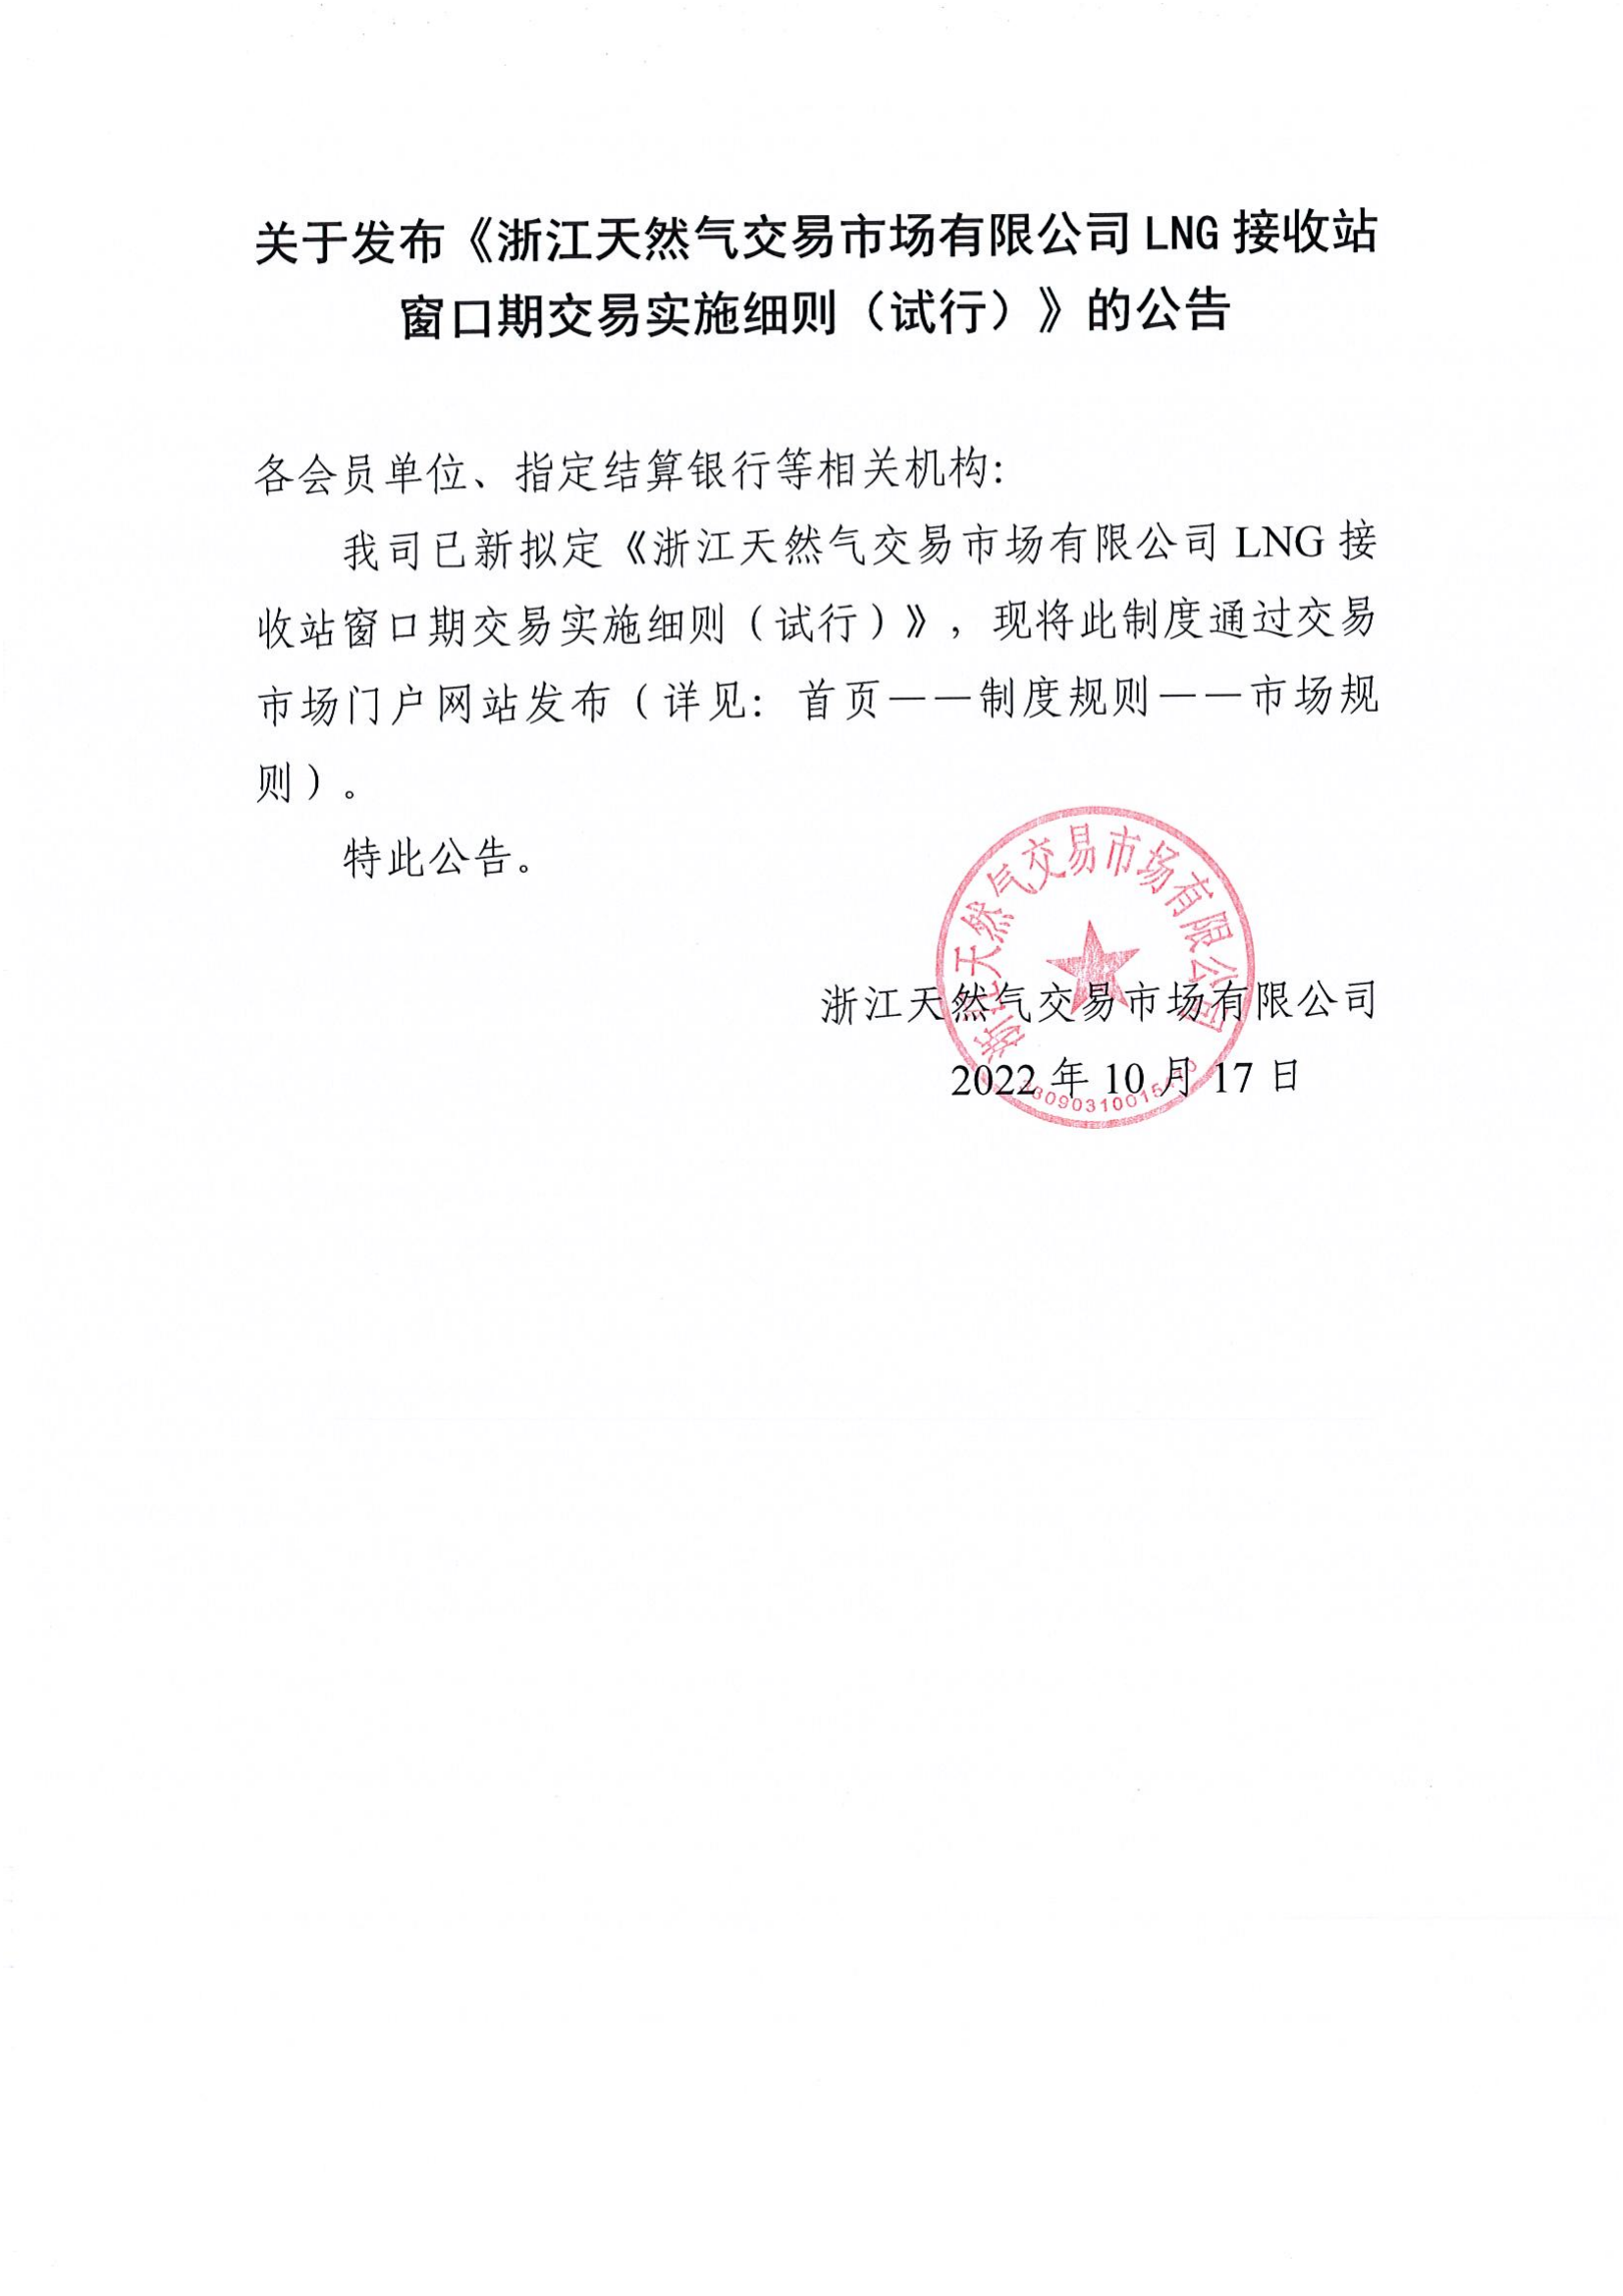 关于发布《浙江天然气交易市场有限公司LNG接收站窗口期交易实施细则（试行）》的公告_00.png